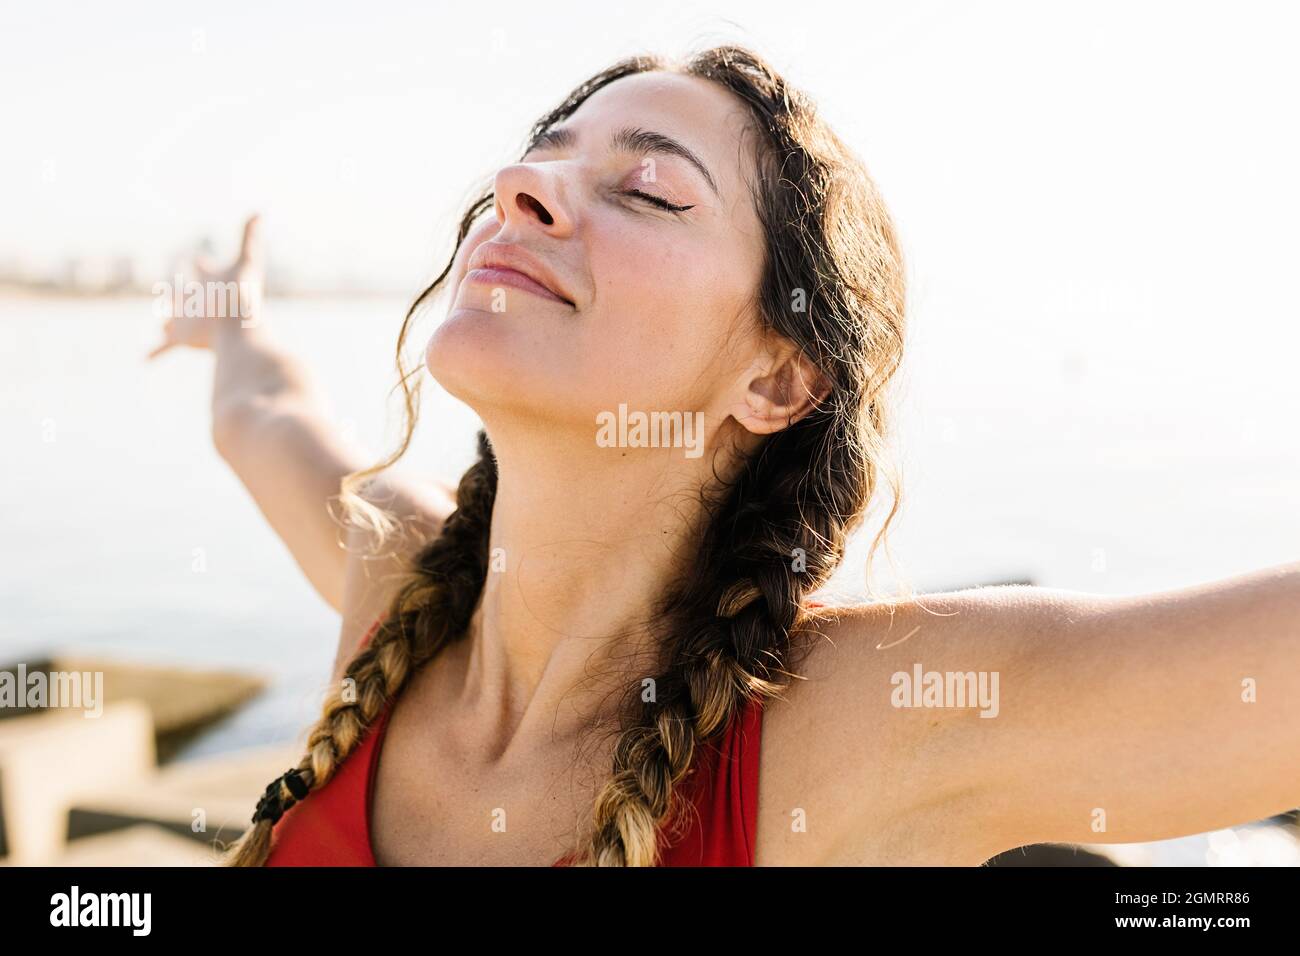 Junge Erwachsene hispanische Frau atmet frische Luft und steht im Sommer am Strand Stockfoto